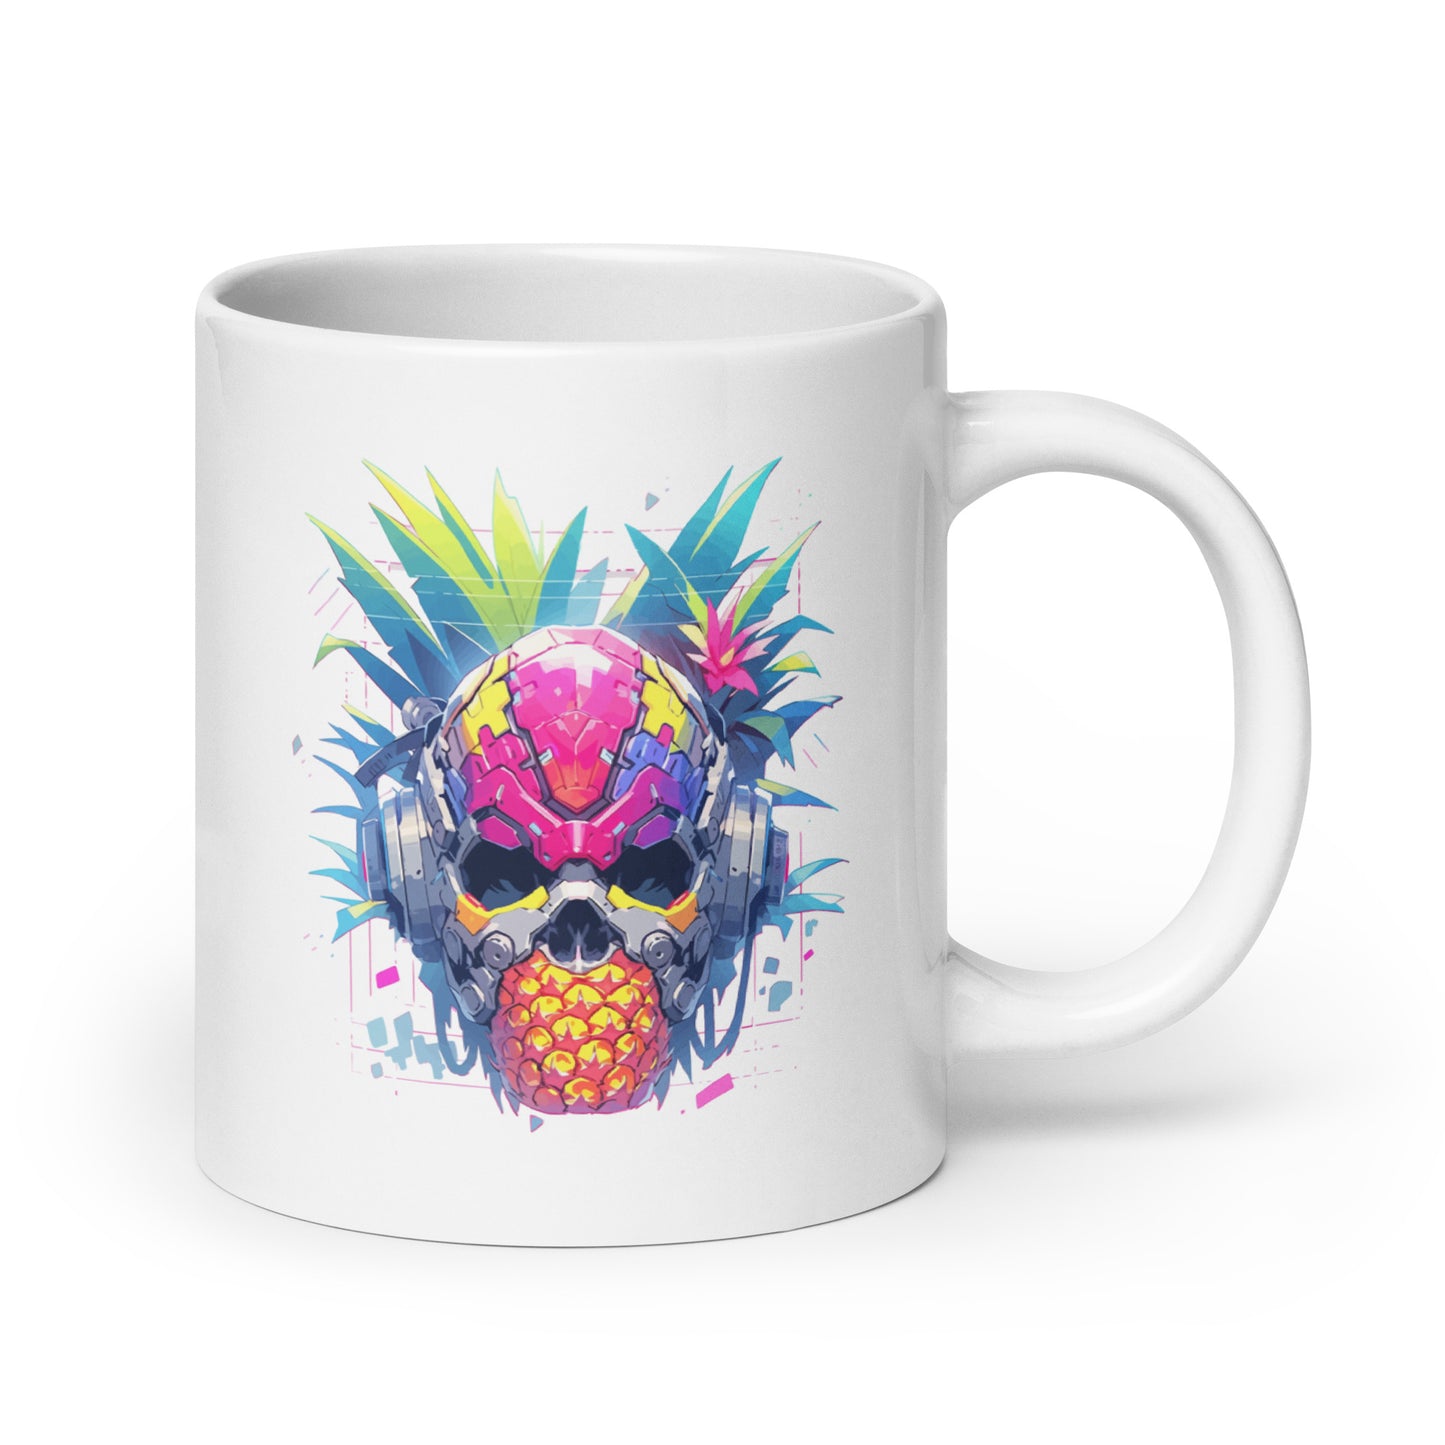 Cyber skull, Fantastic cyborg pineapple head, Pineapple monster Pop Art, Fantasy fruit illustration - White glossy mug